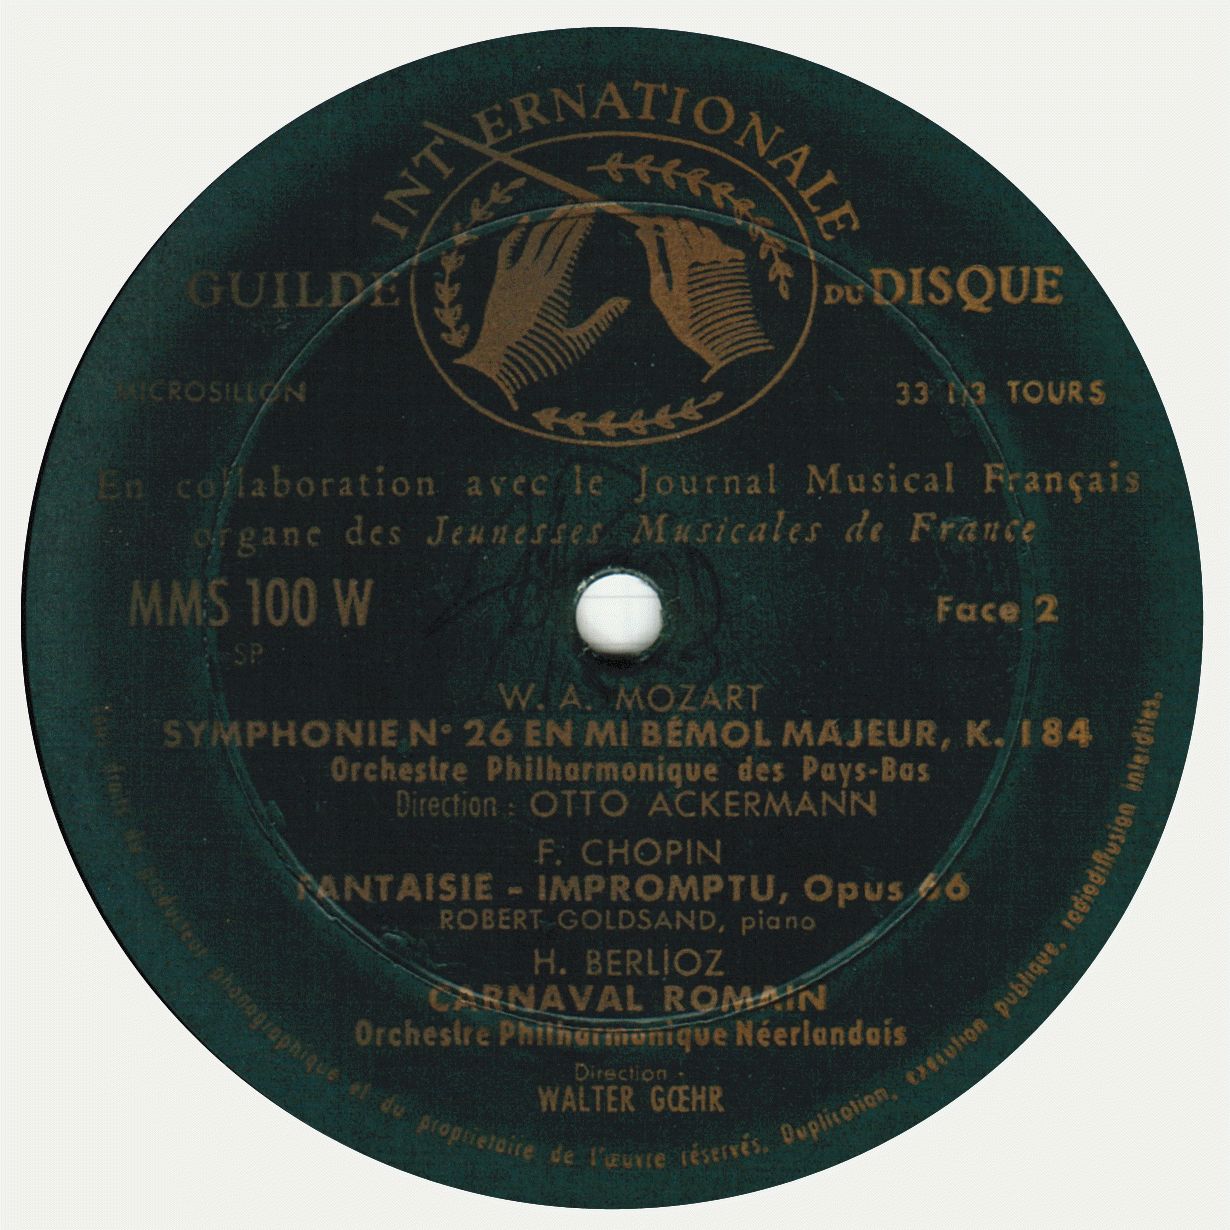 Étiquette face 2 du disque MMS 100 W, édition française, clicquer pour une vue agrandie